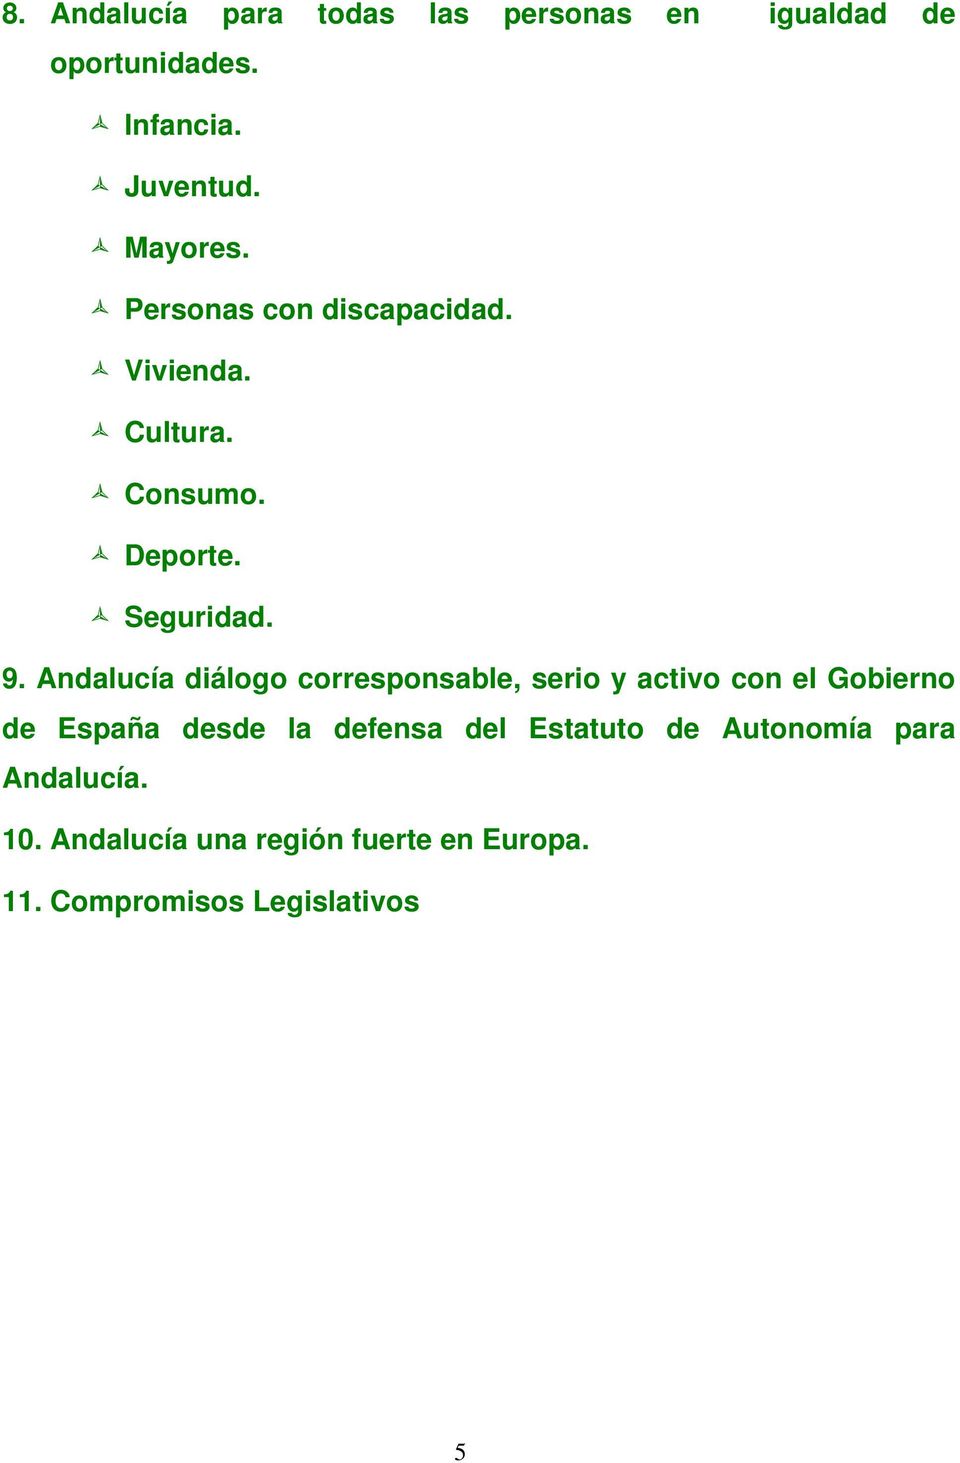 Andalucía diálogo corresponsable, serio y activo con el Gobierno de España desde la defensa del